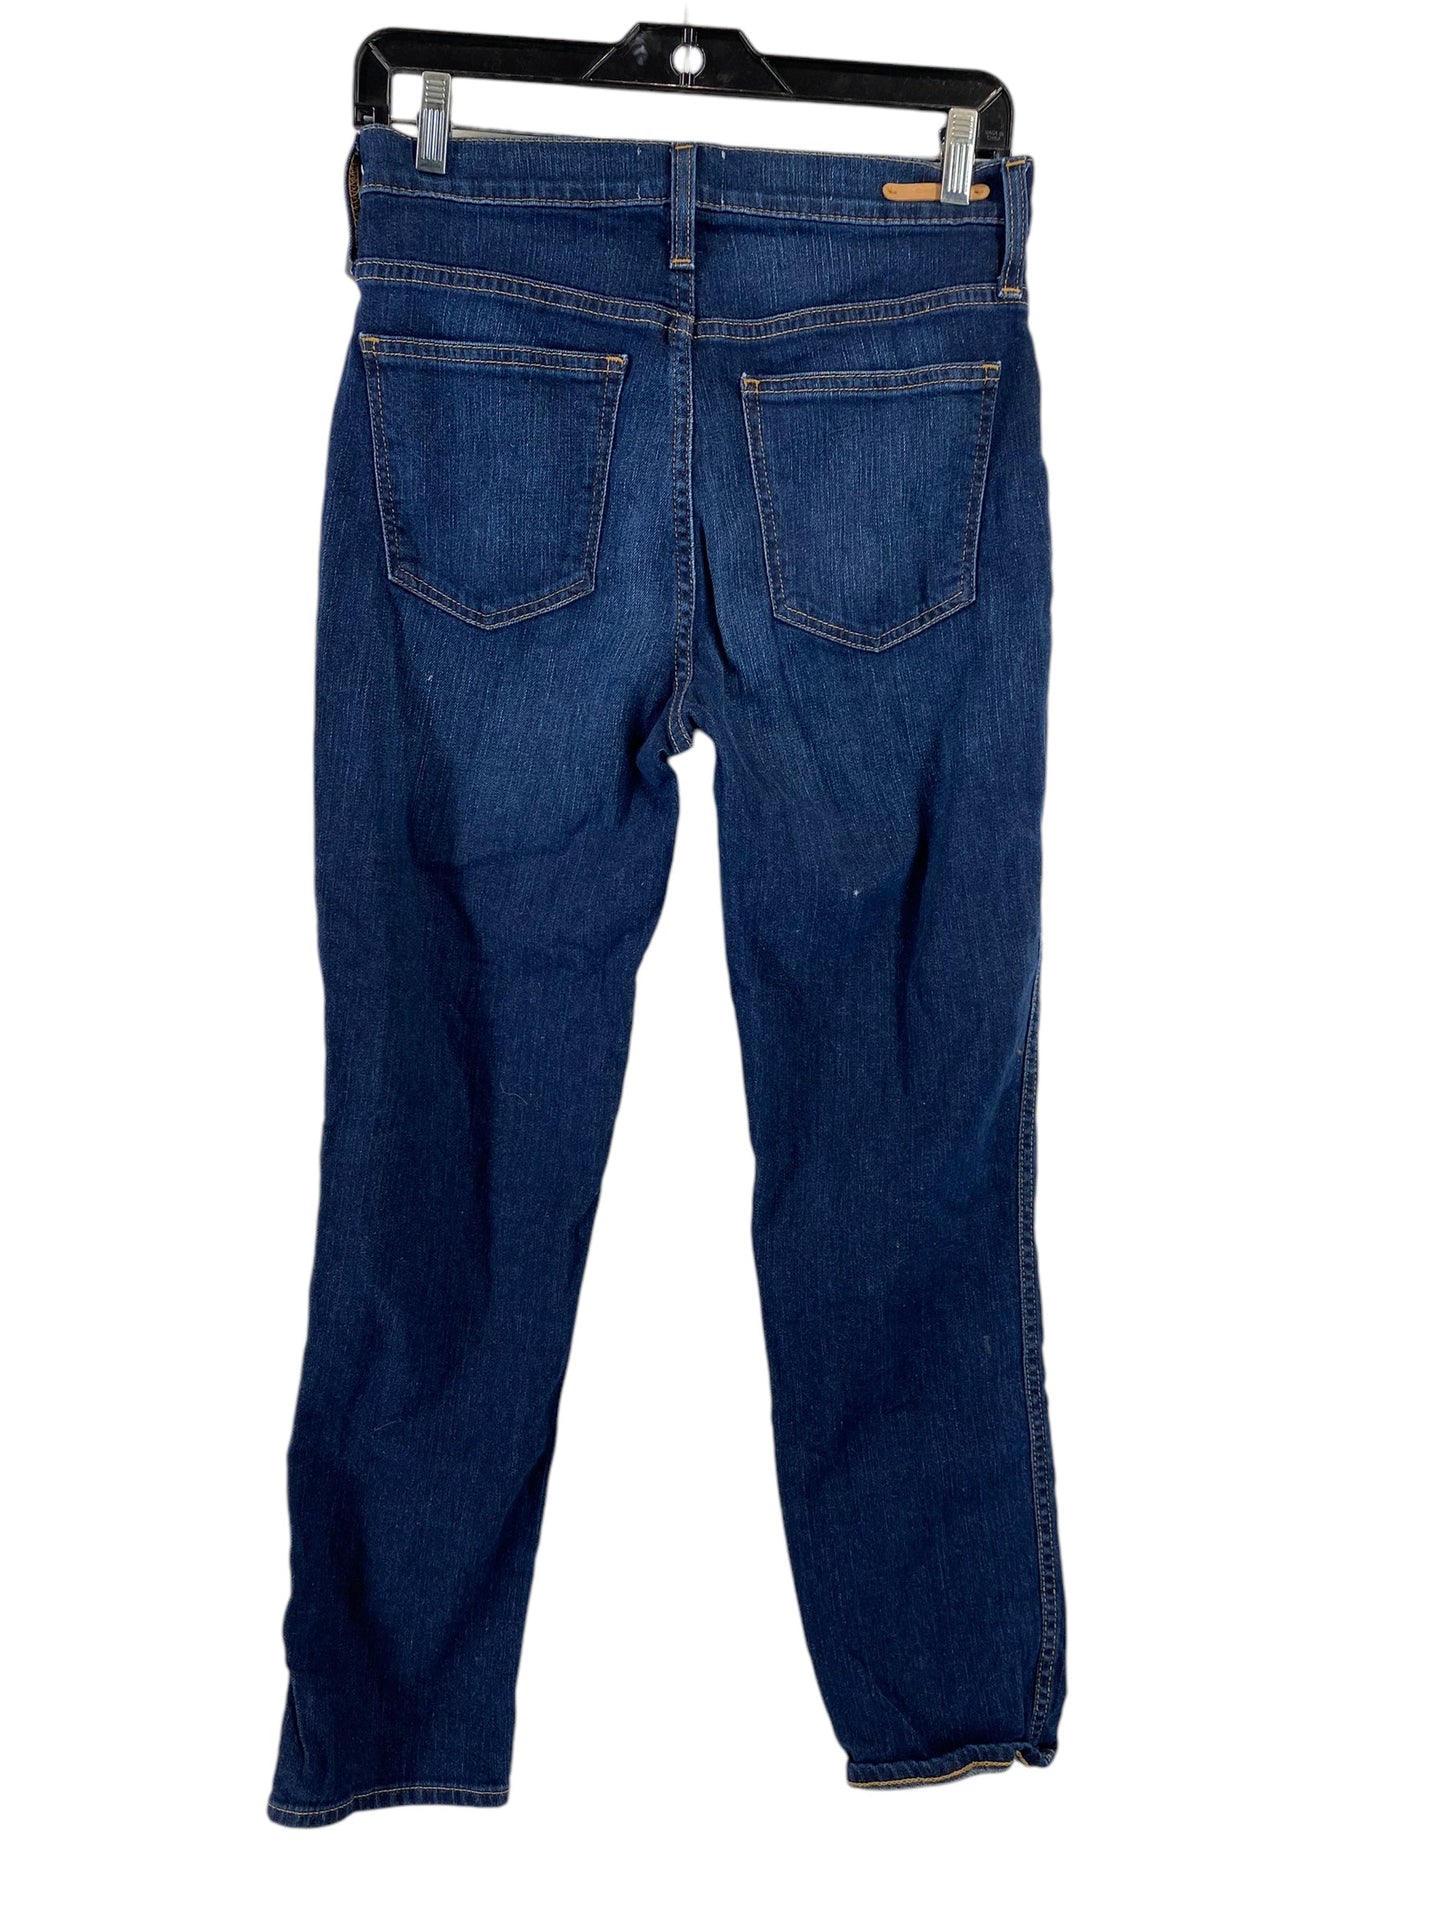 Jeans Skinny By Caslon  Size: 26